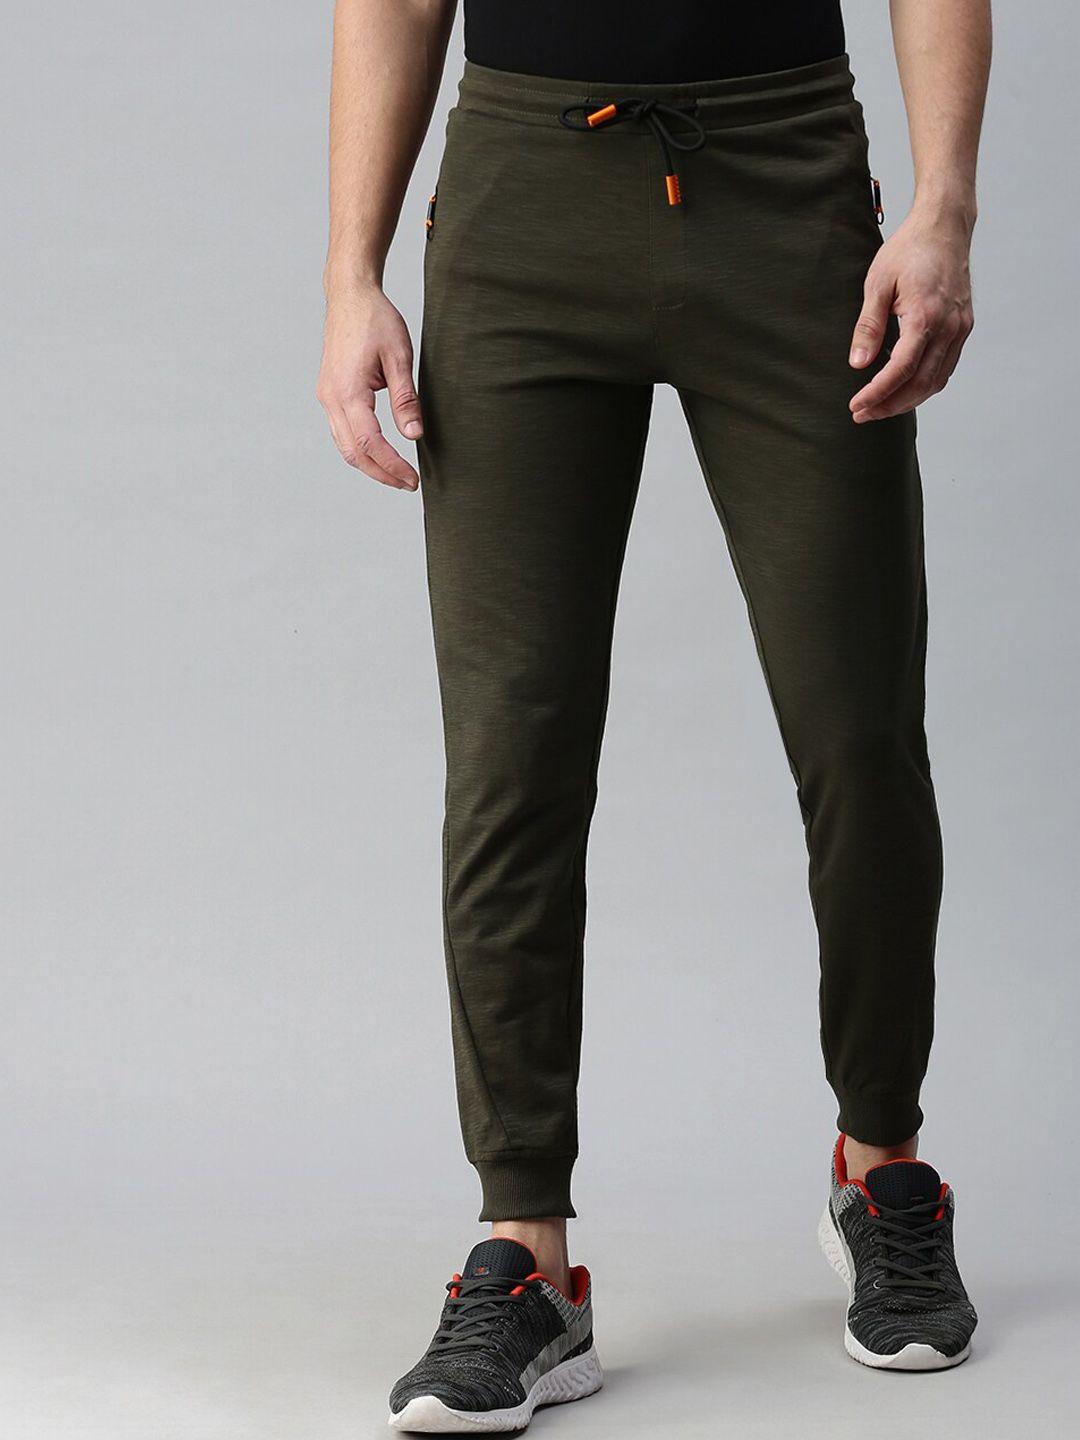 showoff-men-olive-green-solid-slim-fit-cotton-track-pants